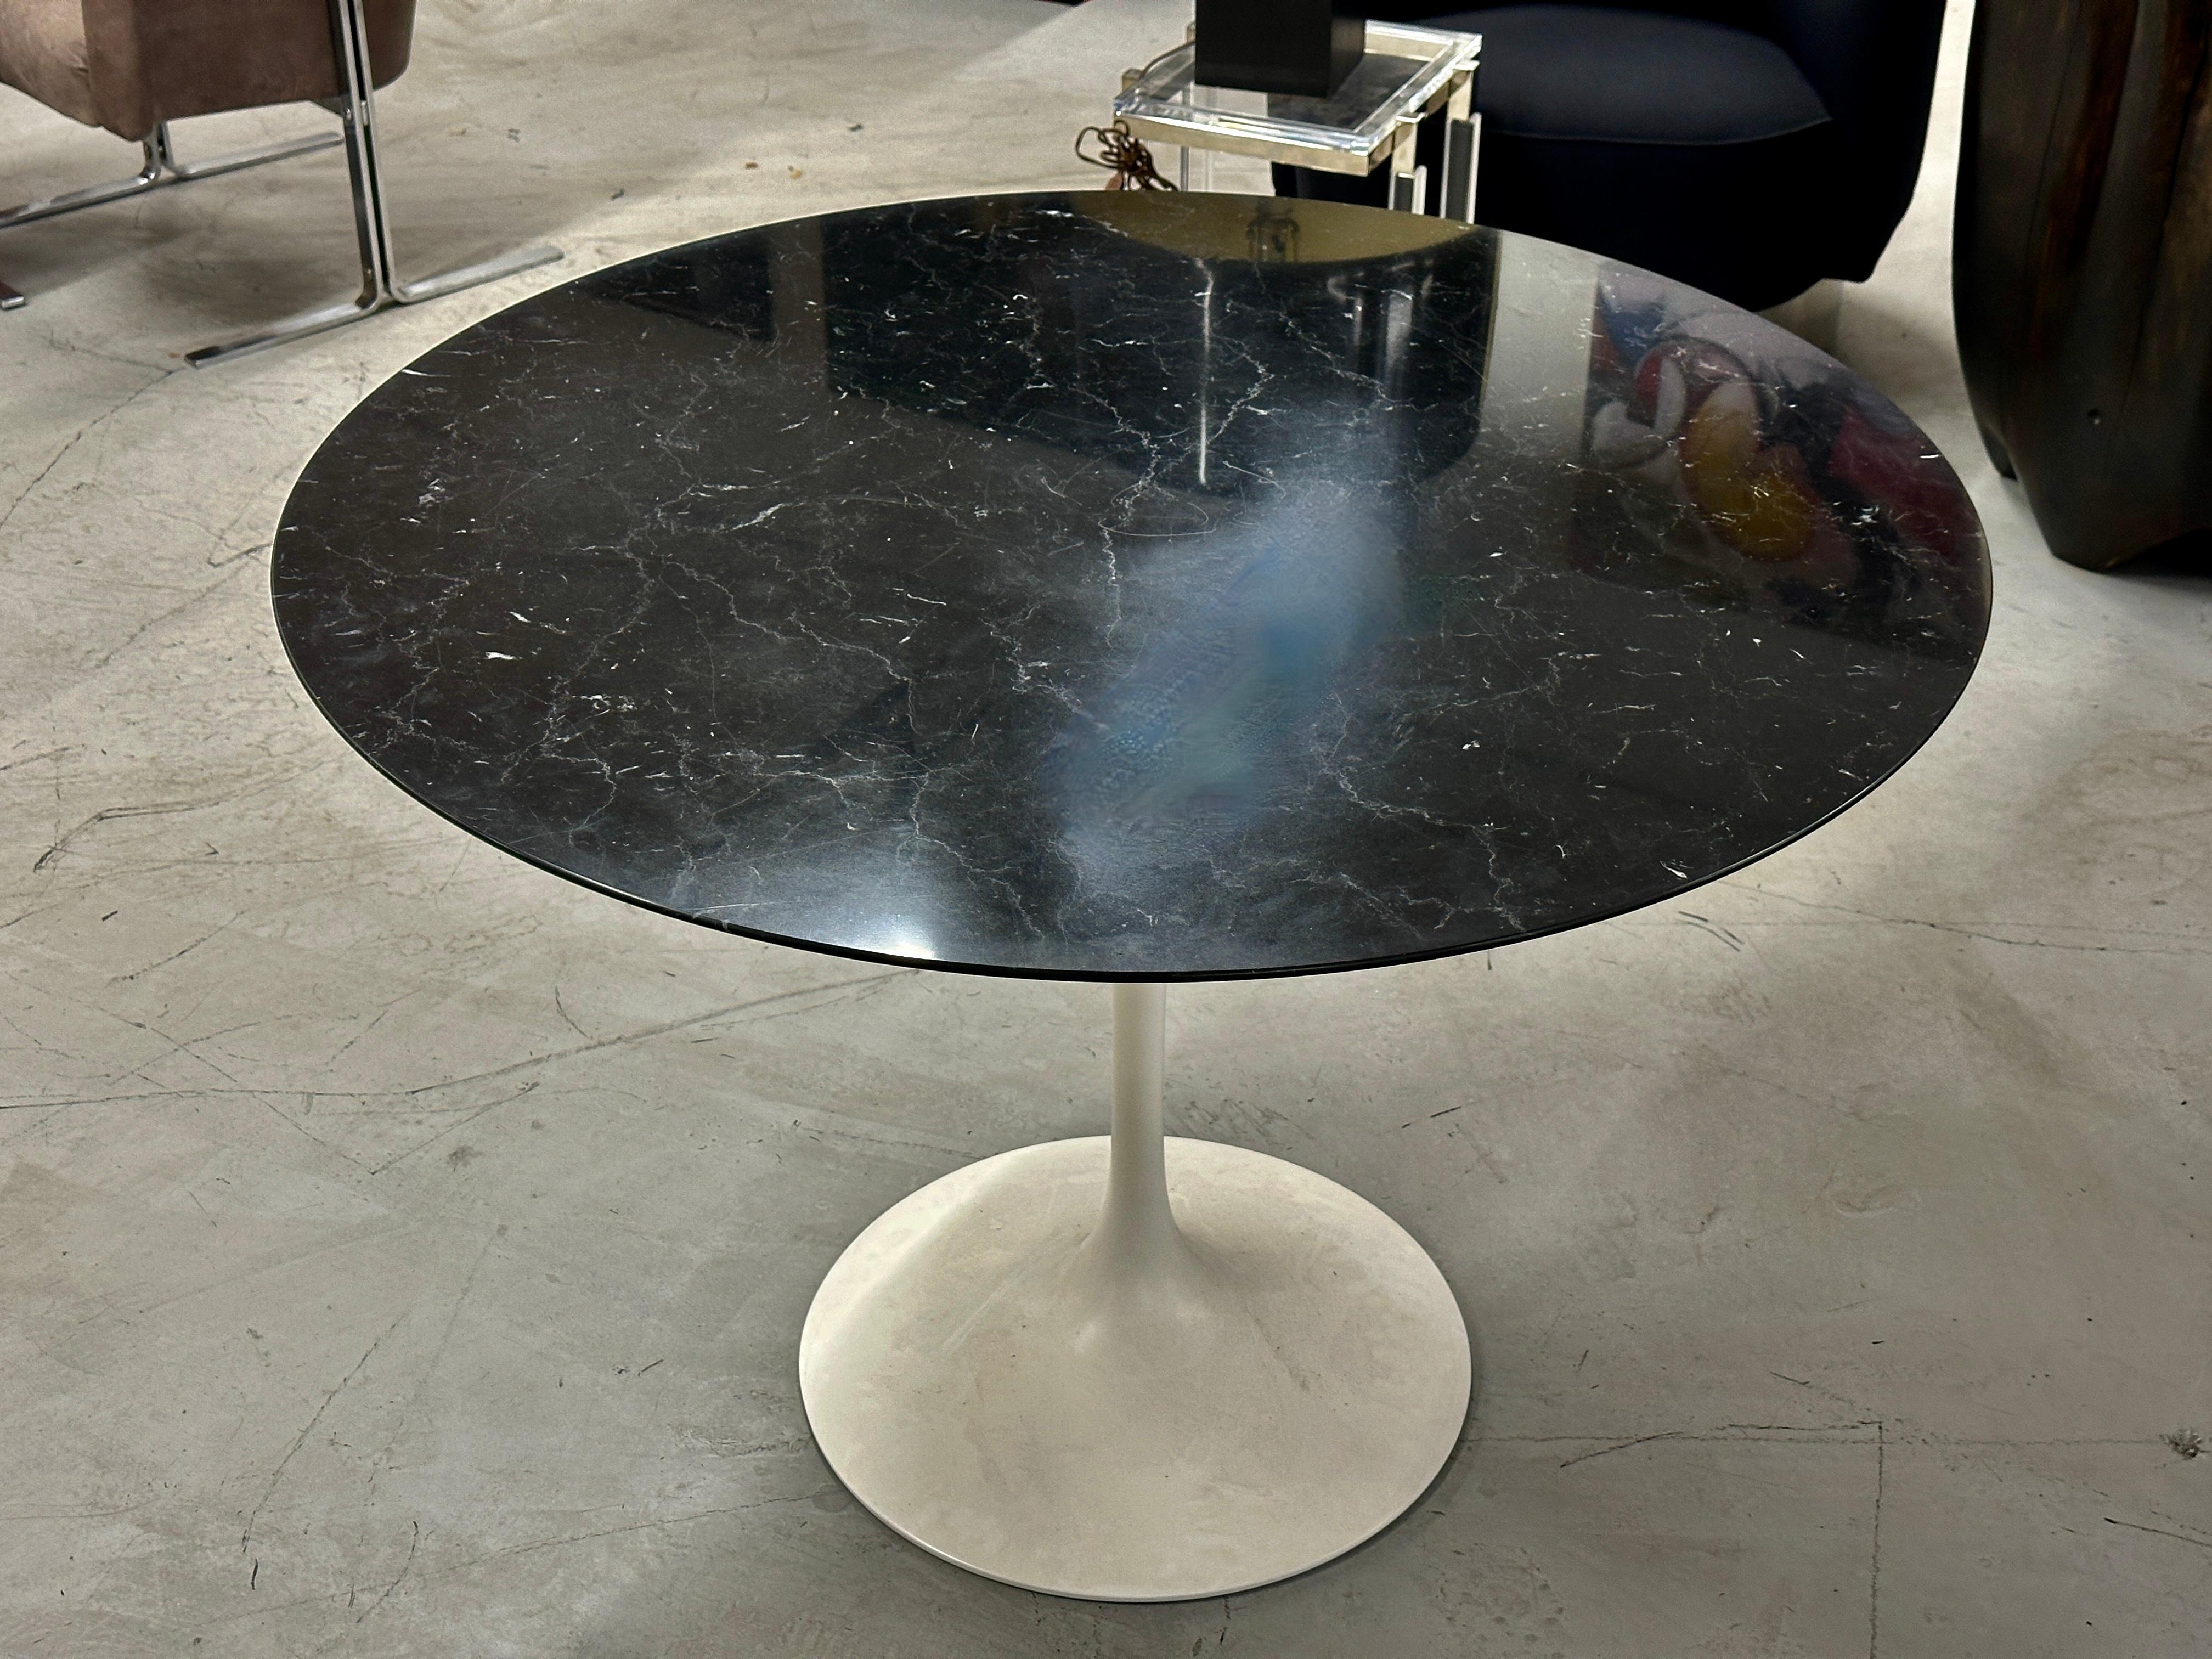 Une très belle table Tulip de Knoll, conçue par Eero Saarinen. Il se caractérise par un plateau en marbre noir magnifiquement grainé et un socle blanc. Nous avons acquis cette table dans la succession d'un antiquaire. Il mesure 42 pouces de diamètre